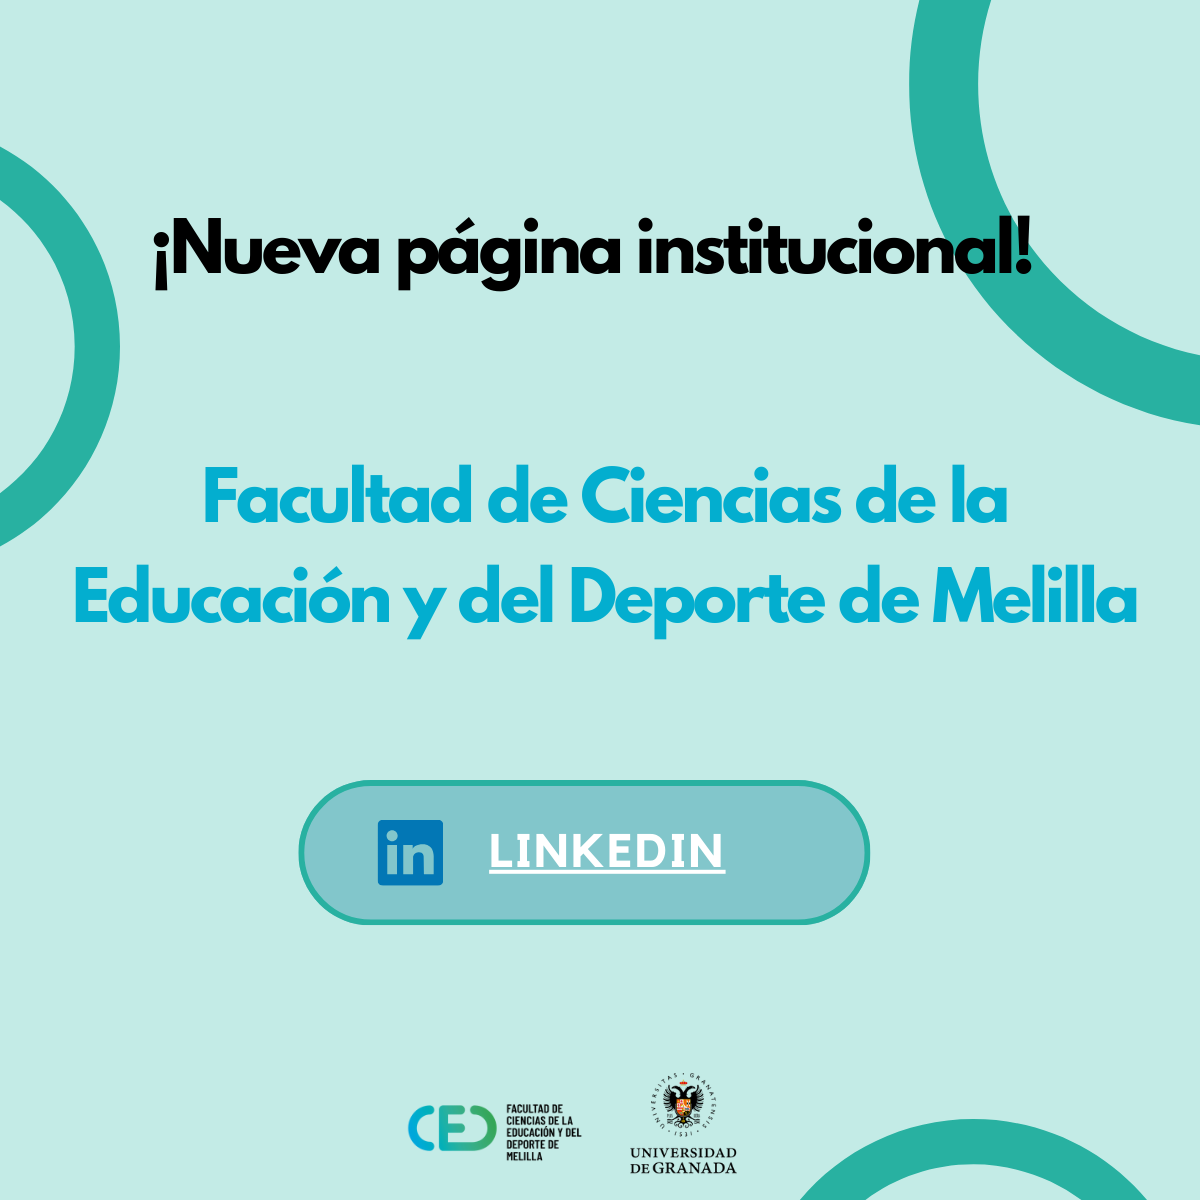 La Facultad de Ciencias de la Educación y del Deporte de Melilla estrena página oficial en LinkedIn